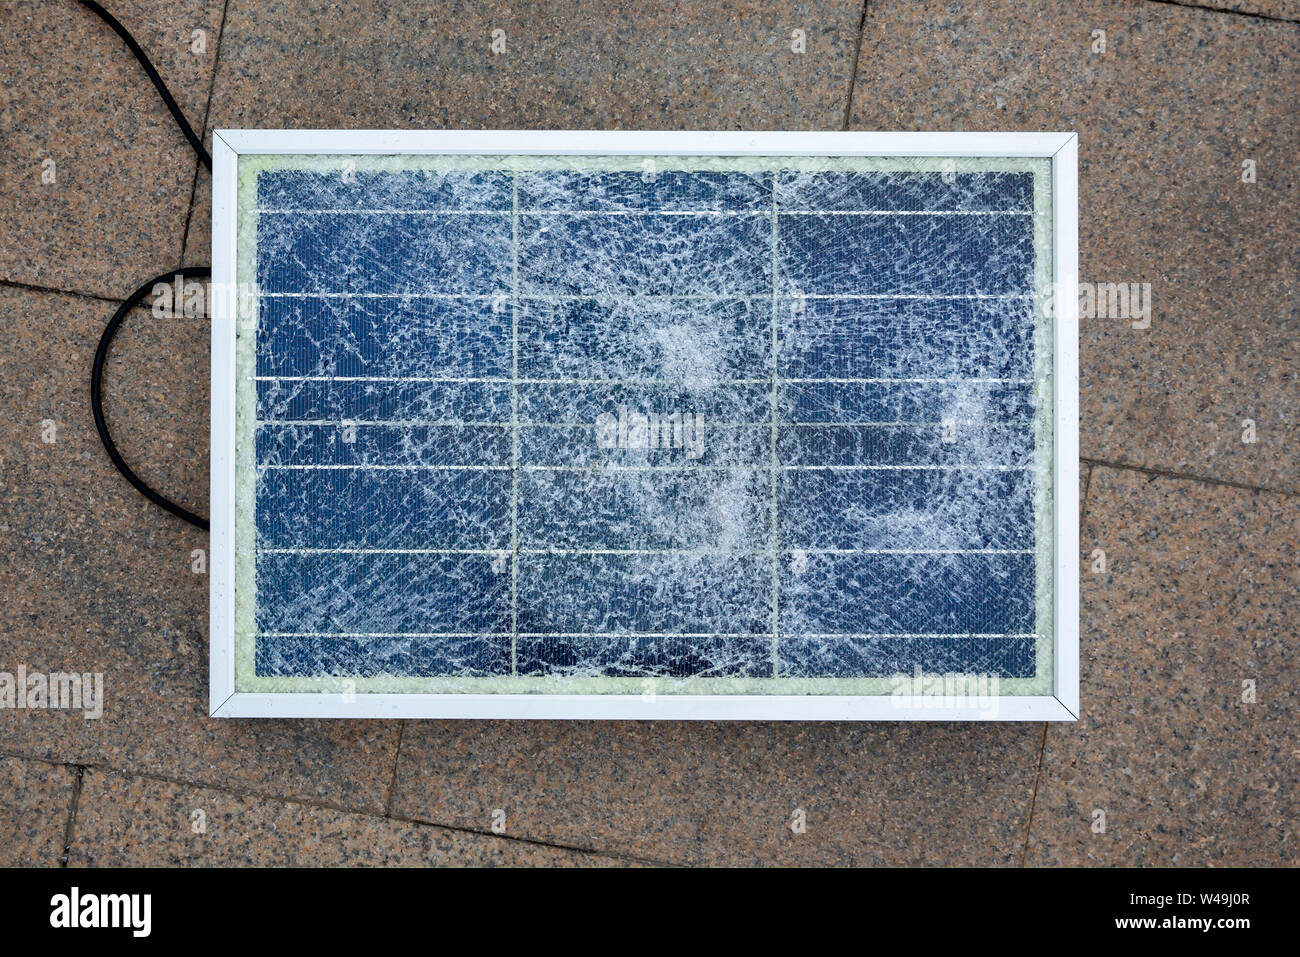 Panel solar roto es visto sobre el terreno durante una protesta contra la interferencia del gobierno en la industria. Foto de stock